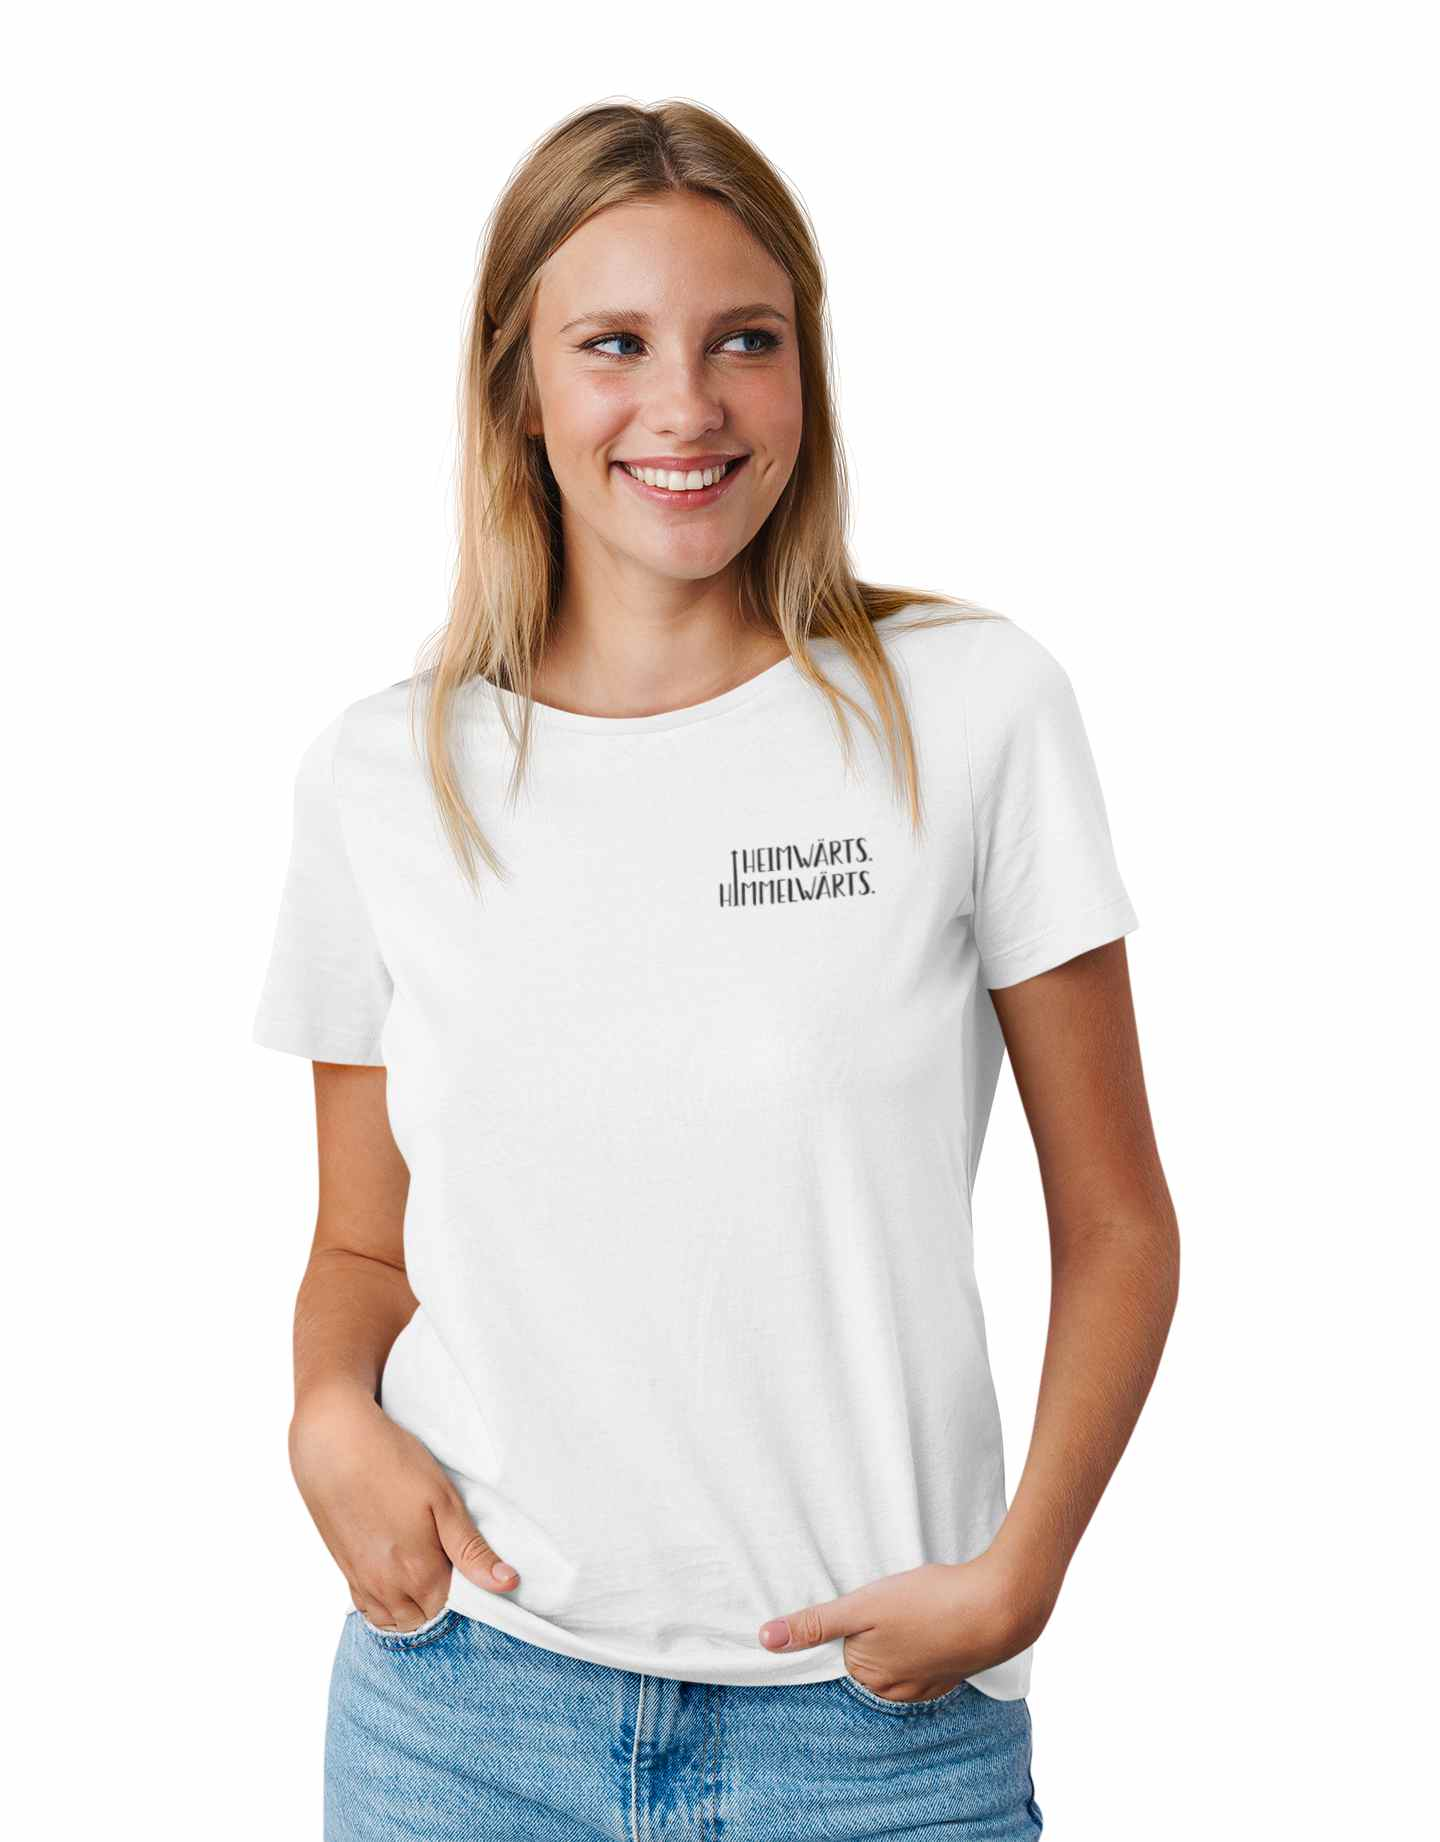 Junge Frau trägt nachhaltiges, christliches T-Shirt mit christlicher Spruch "Heimwärts. Himmelwärts".